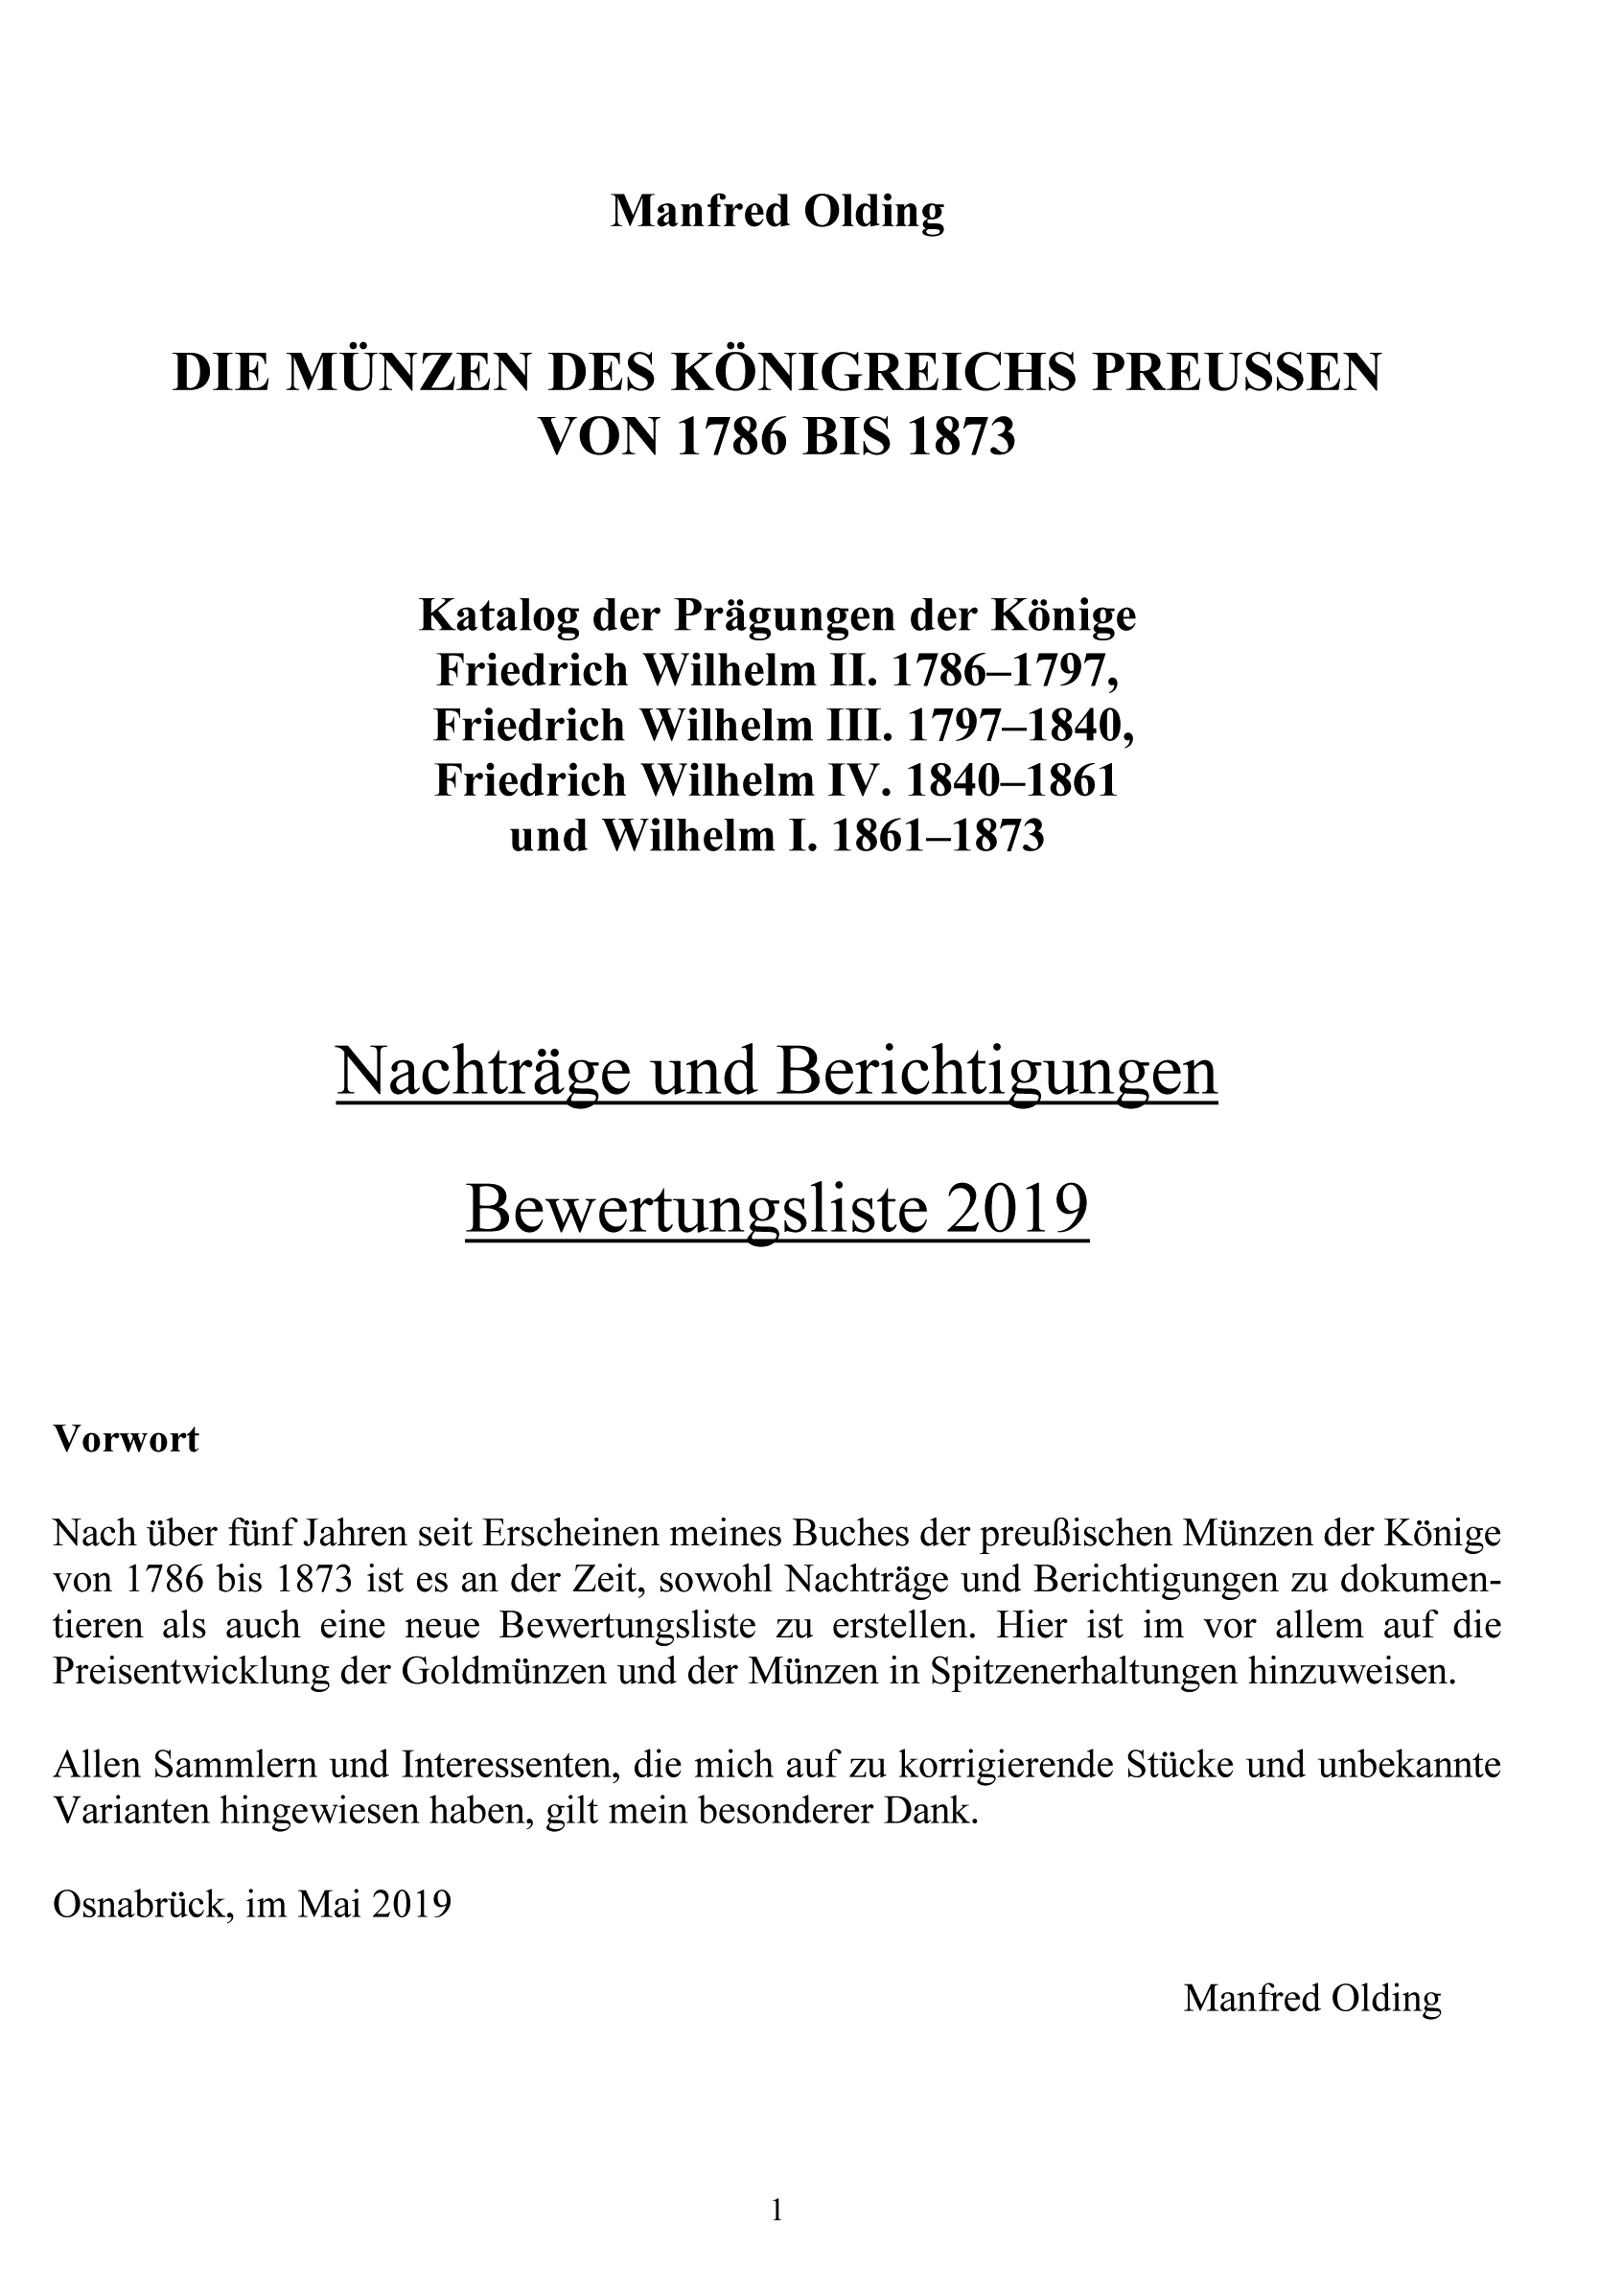 Die Münzen des Königreichs Preußen von 1786 bis 1873 - Nachträge und Berichtigungen, Bewertungsliste 2019 - Cover